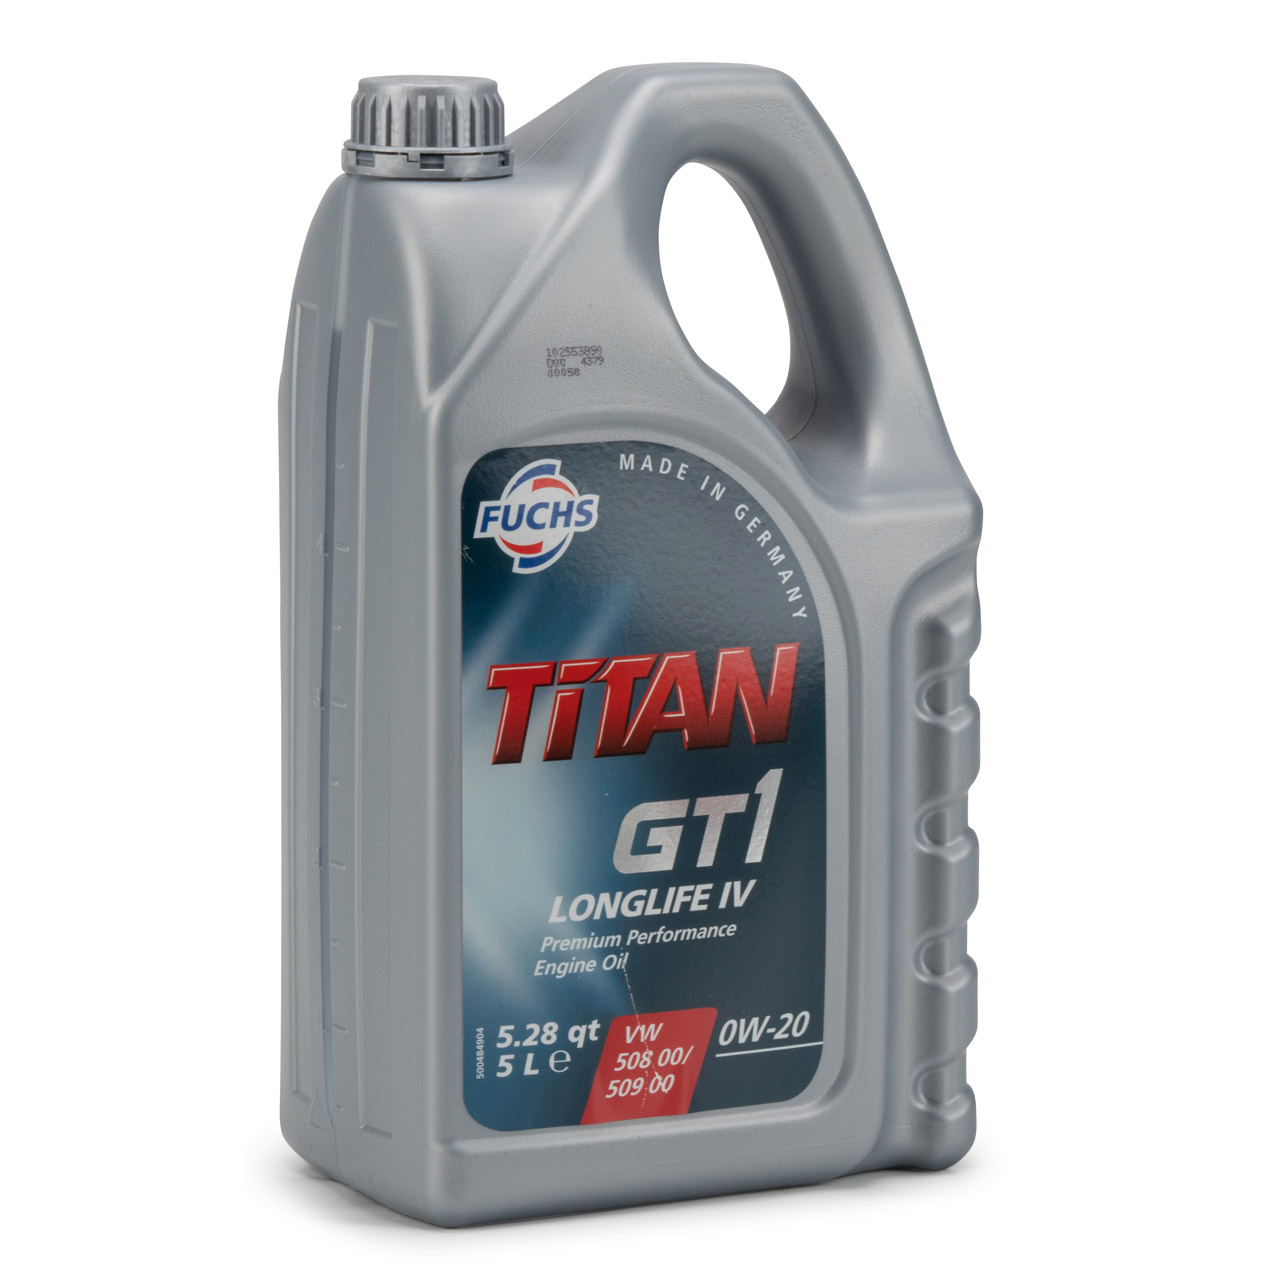 FUCHS Motoröl Öl TITAN GT1 LONGLIFE IV 0W-20 0W20 VW 508.00/509.00 5 Liter 5L